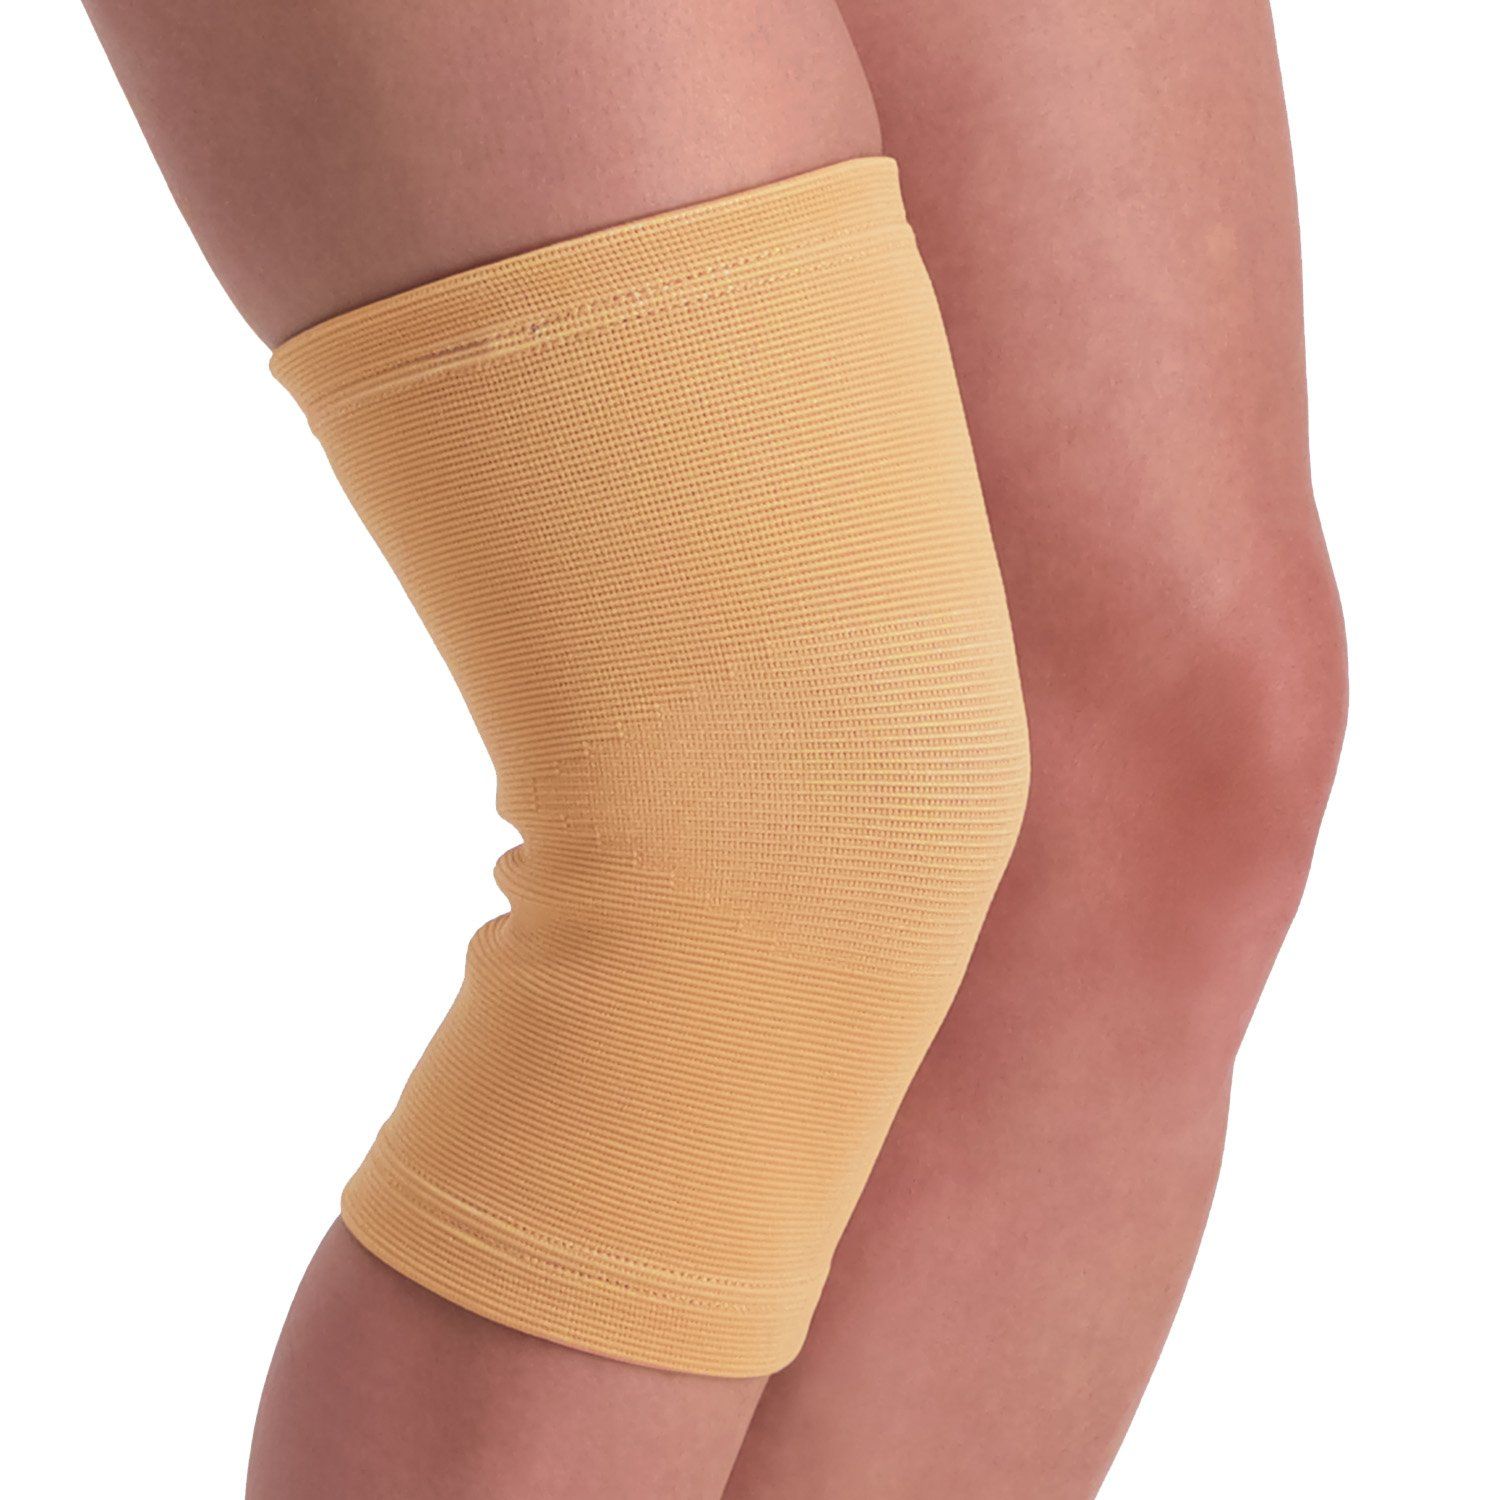 Dunimed knee sleeve